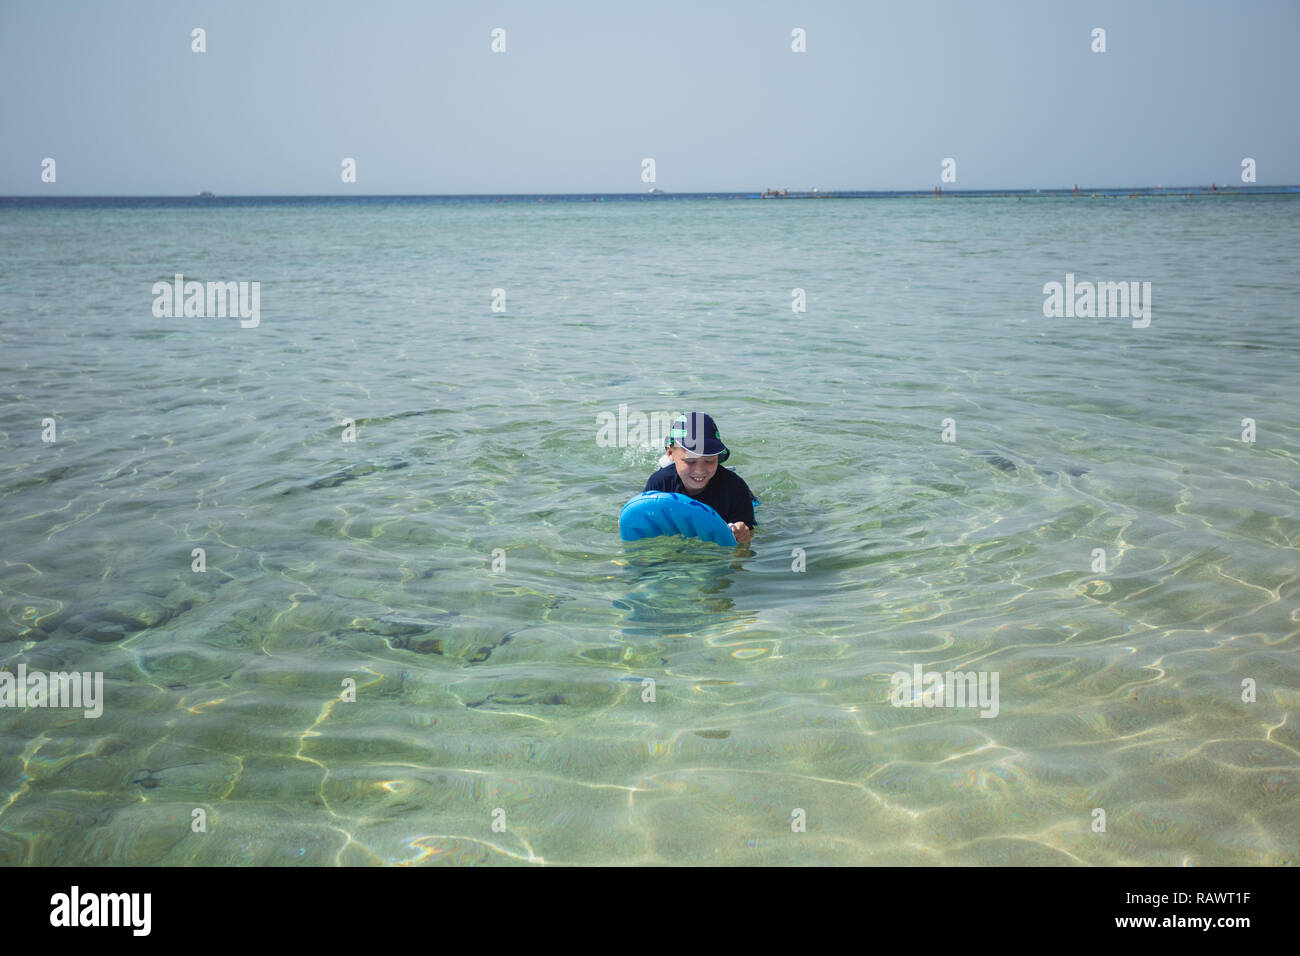 Süße weiß gegerbt Kid im Badeanzug, Kappe und Aqua schuhe Spaß am Sommer, der Sandstrand mit Blau aufblasbares Surfboard. Horizontale Farbfotografie. Stockfoto